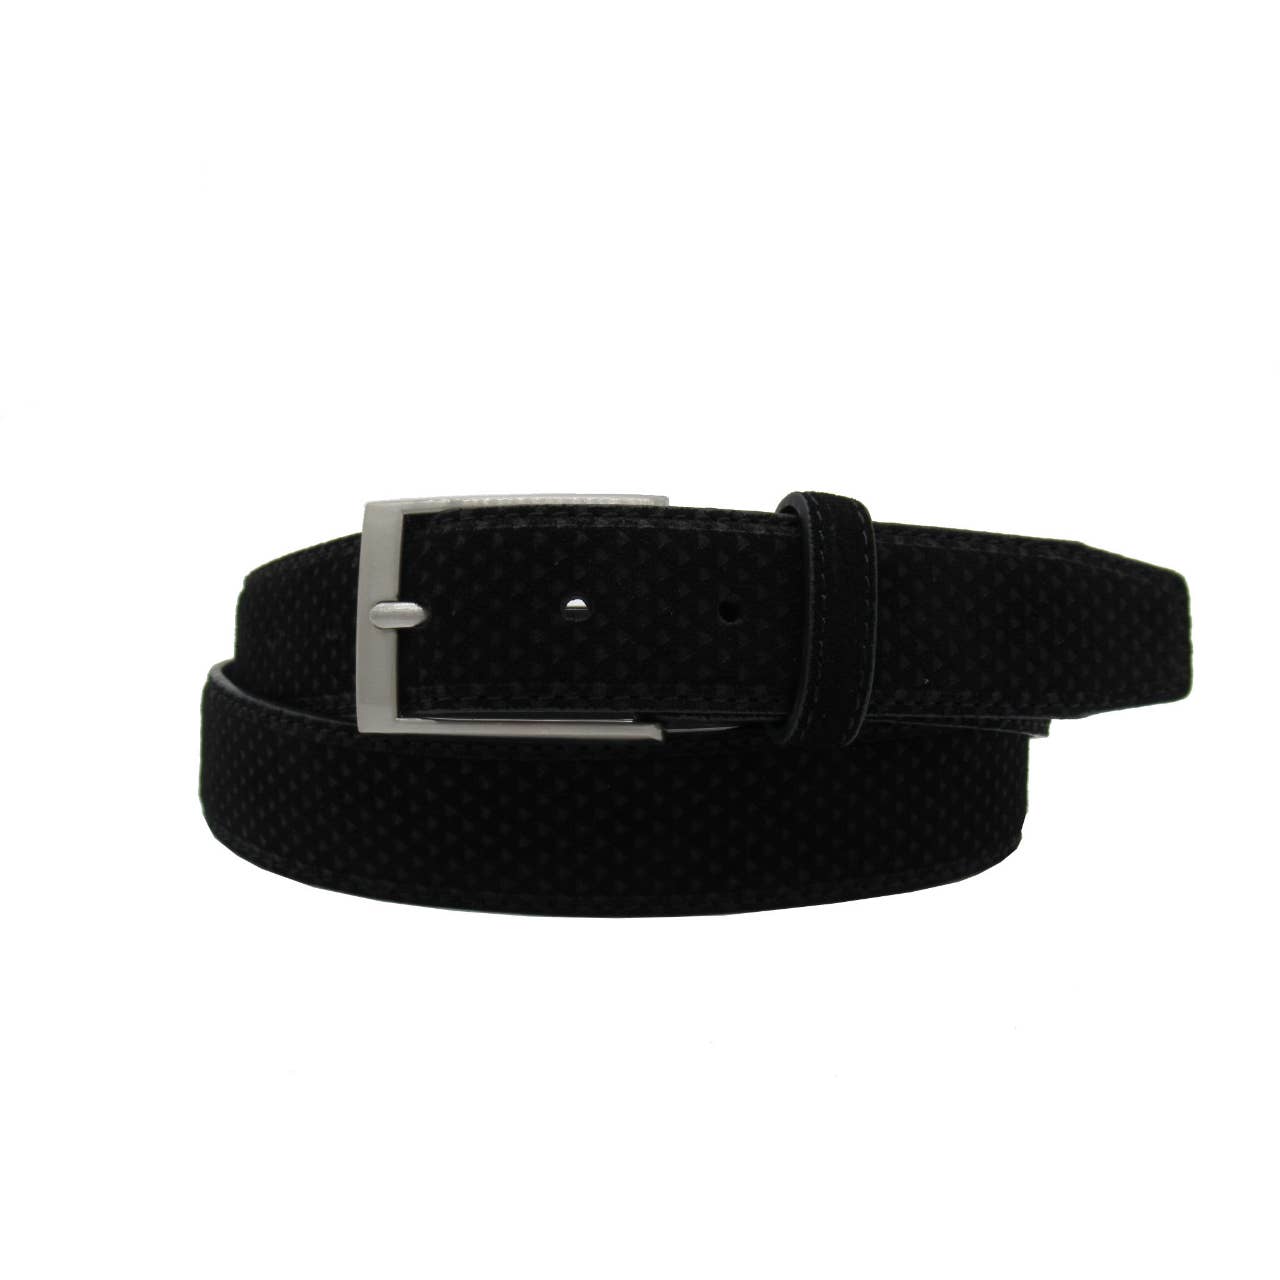 Wesley Suede Leather 3.5 CM Belt Black